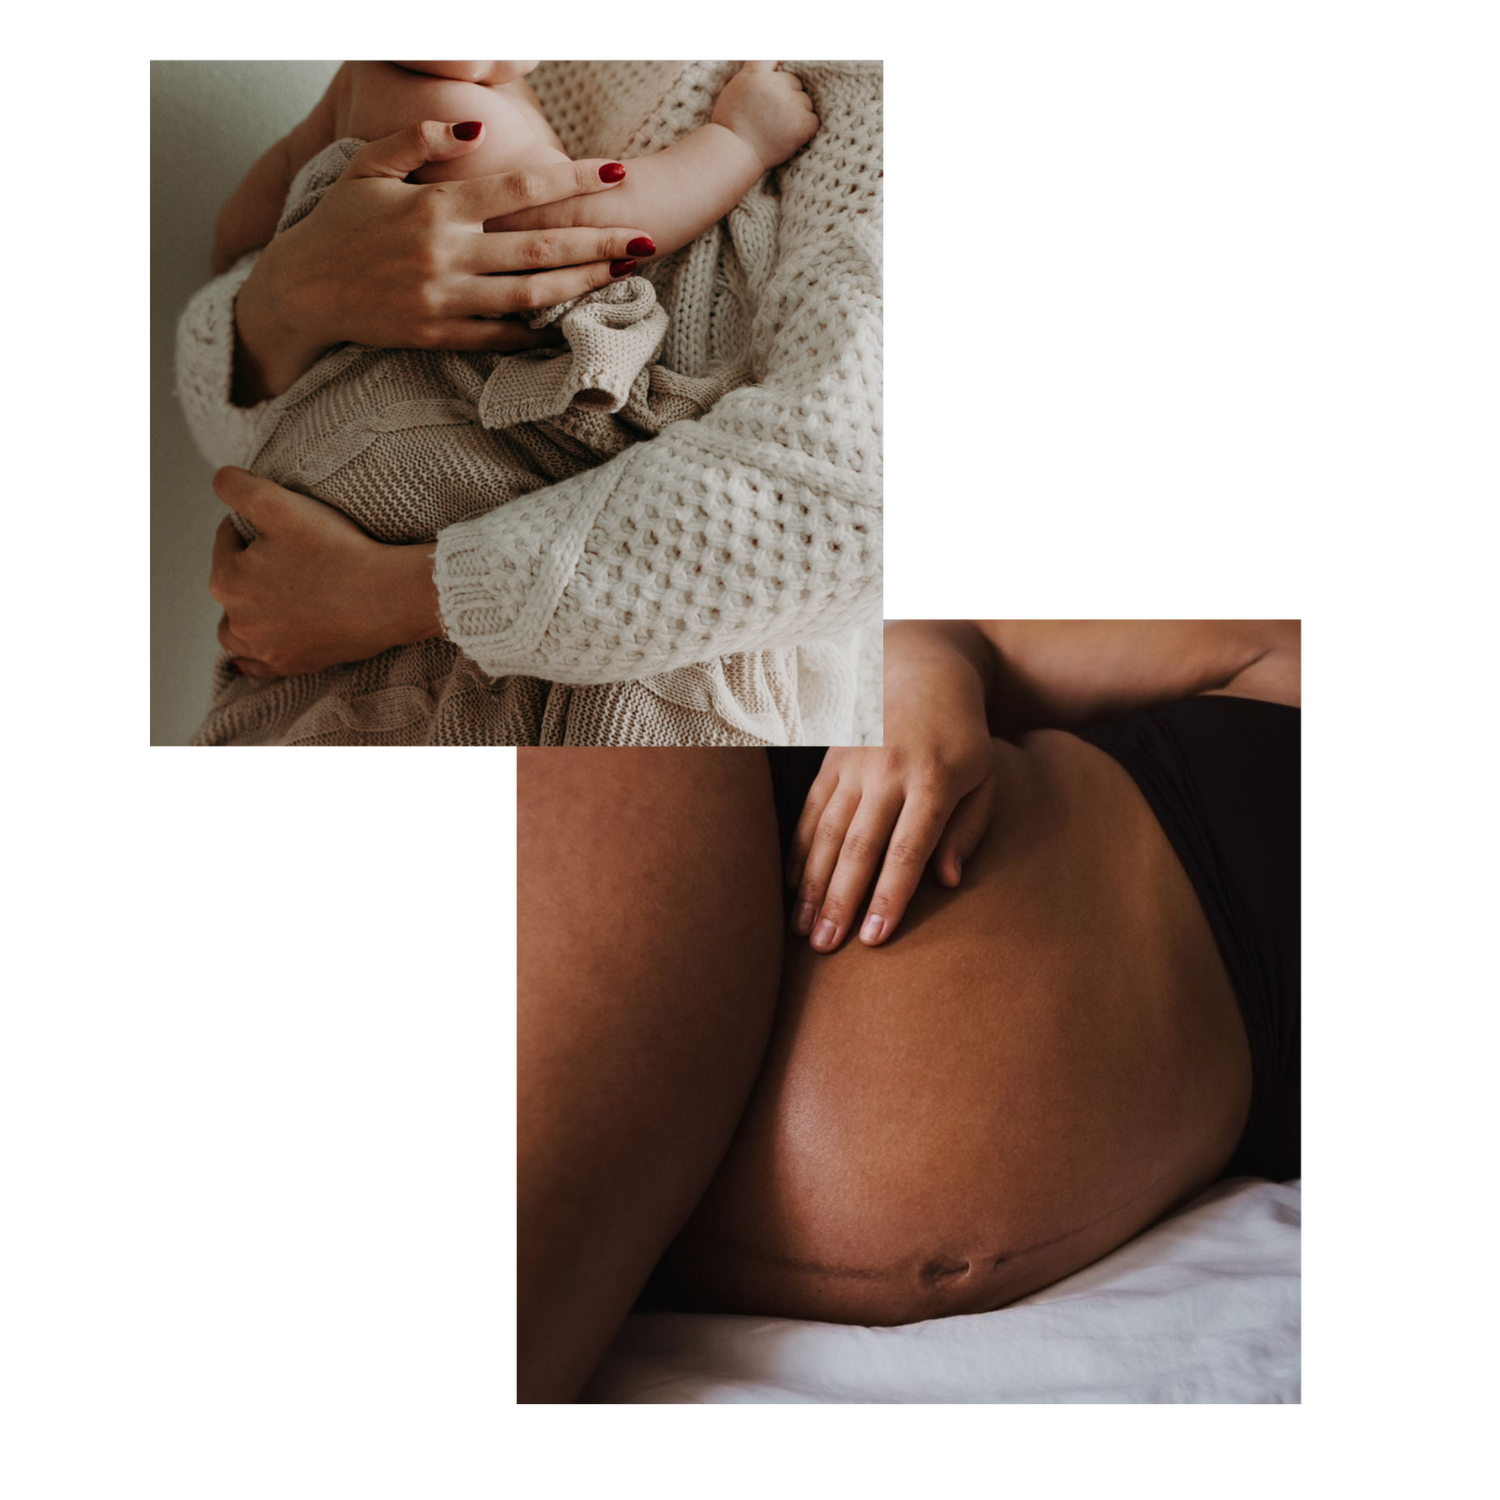 En kollage af to billeder. Den første er en kvinde, der holder en baby. Den anden er af en gravid mave. 